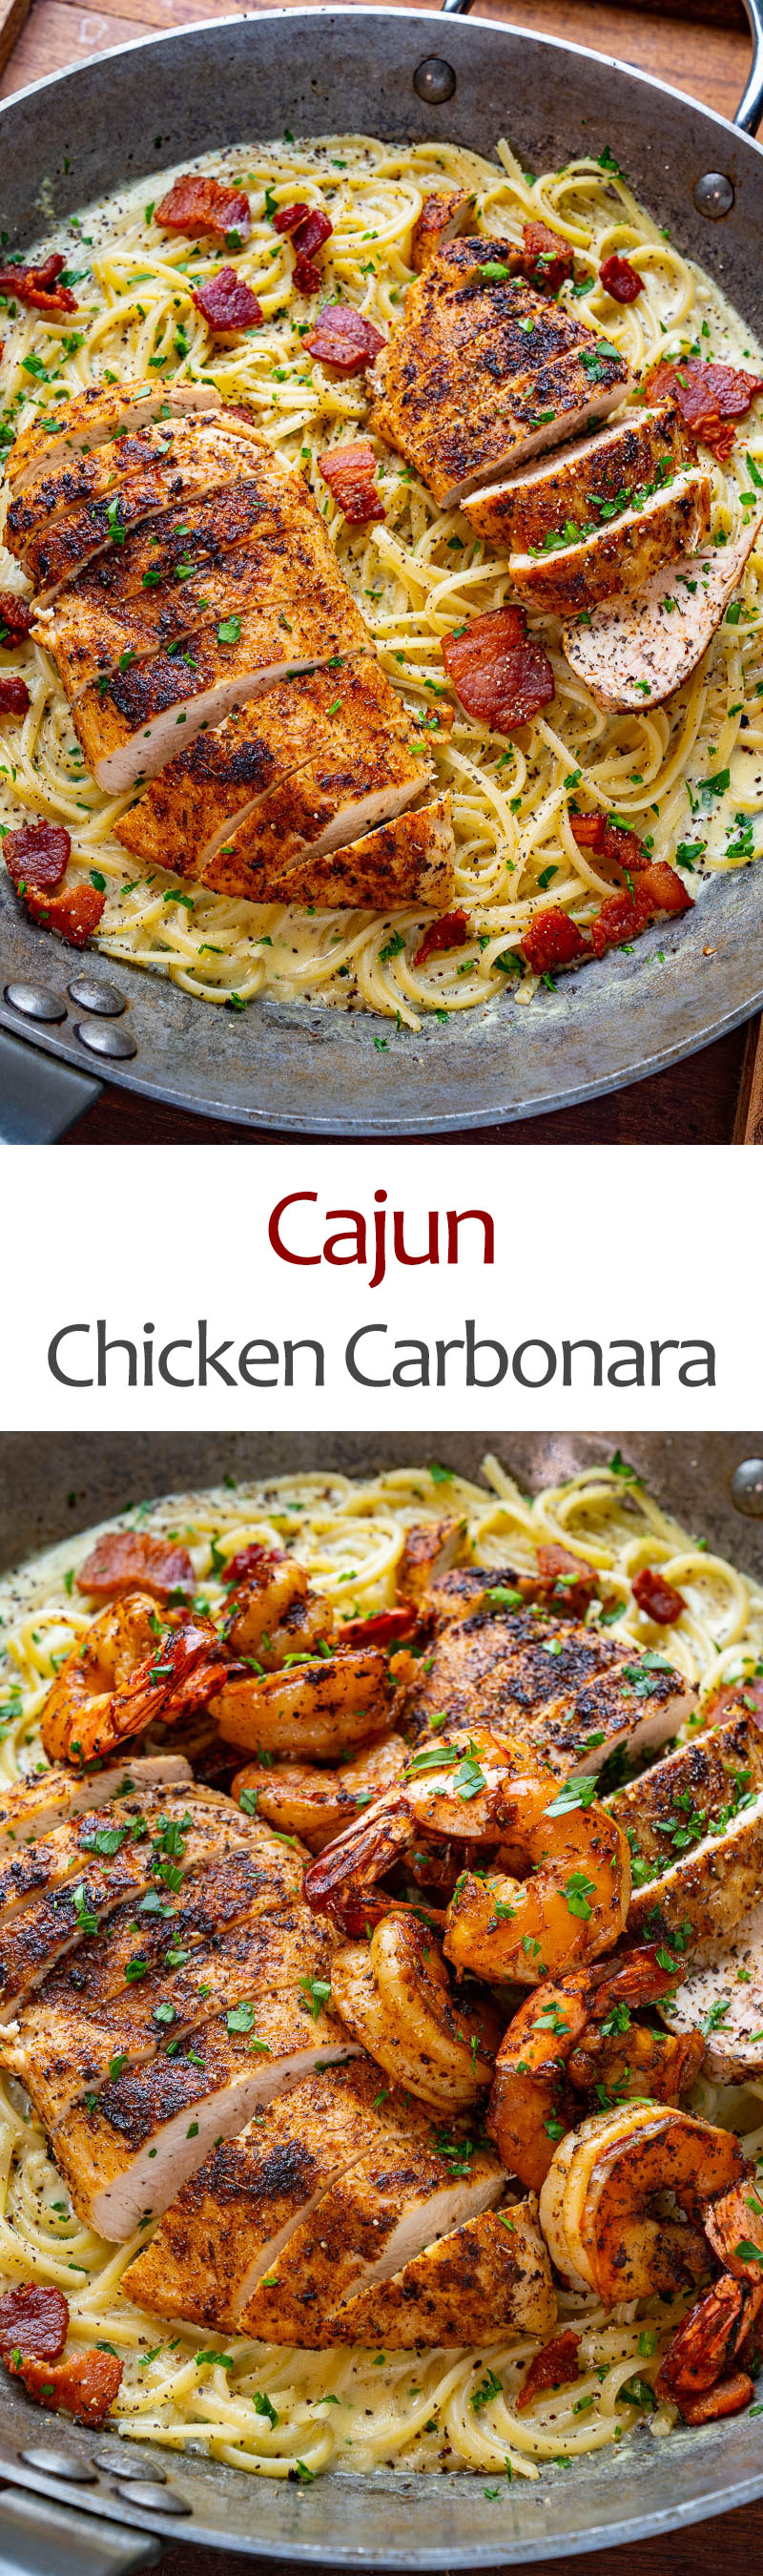 Cajun Chicken Carbonara